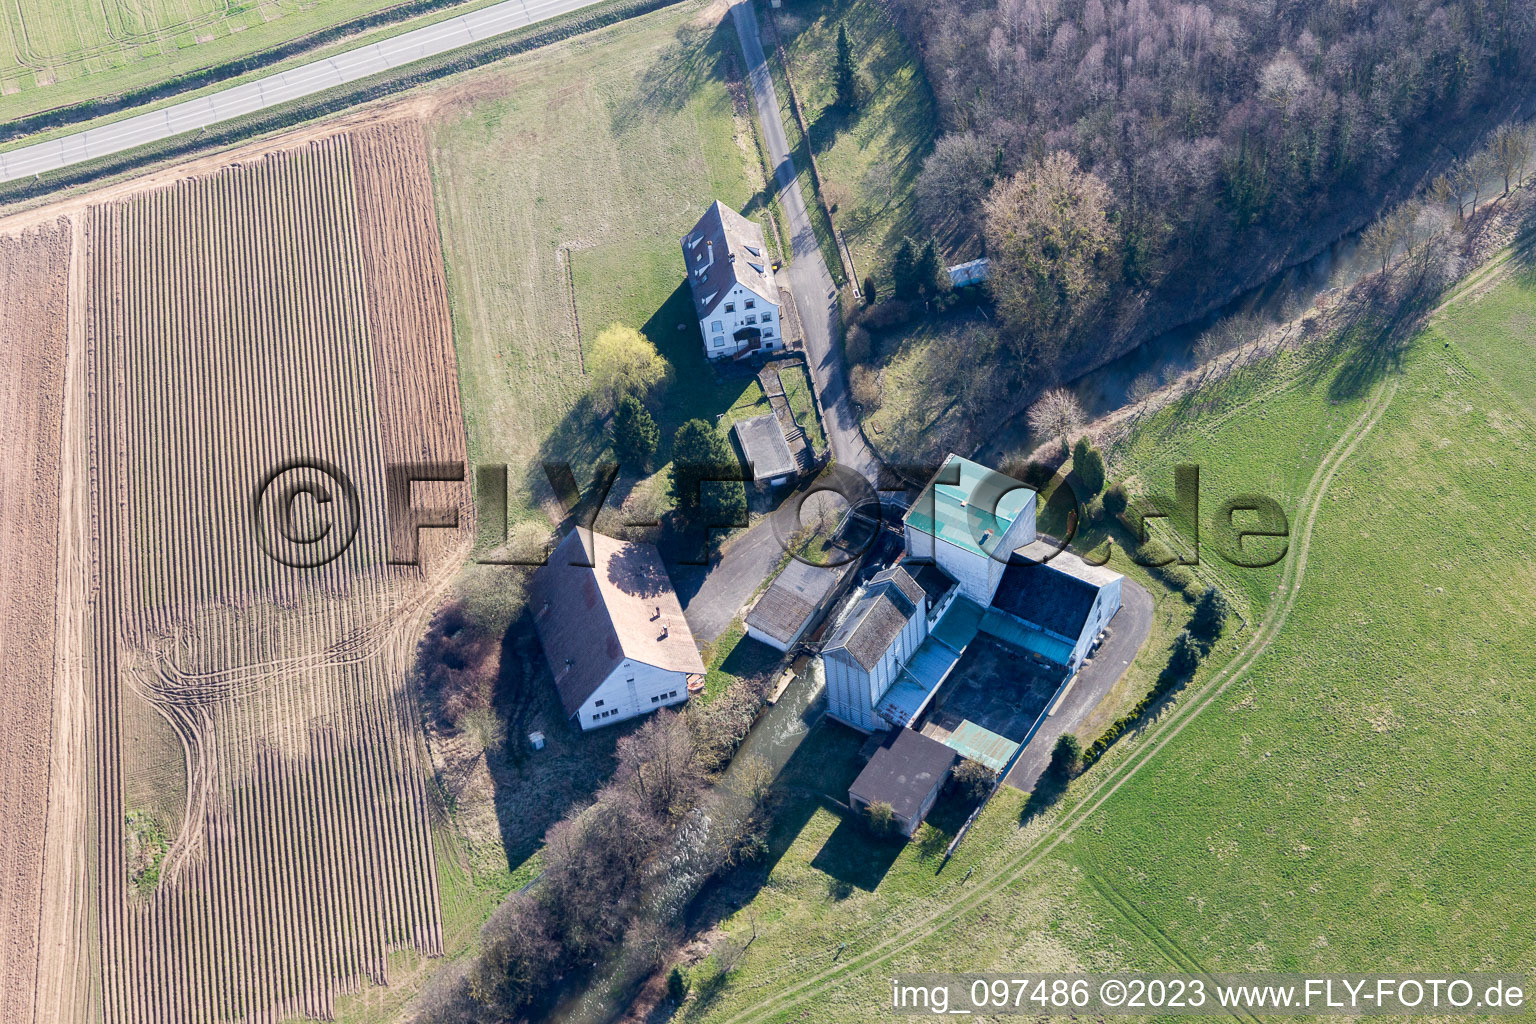 Mertzwiller im Bundesland Bas-Rhin, Frankreich aus der Luft betrachtet